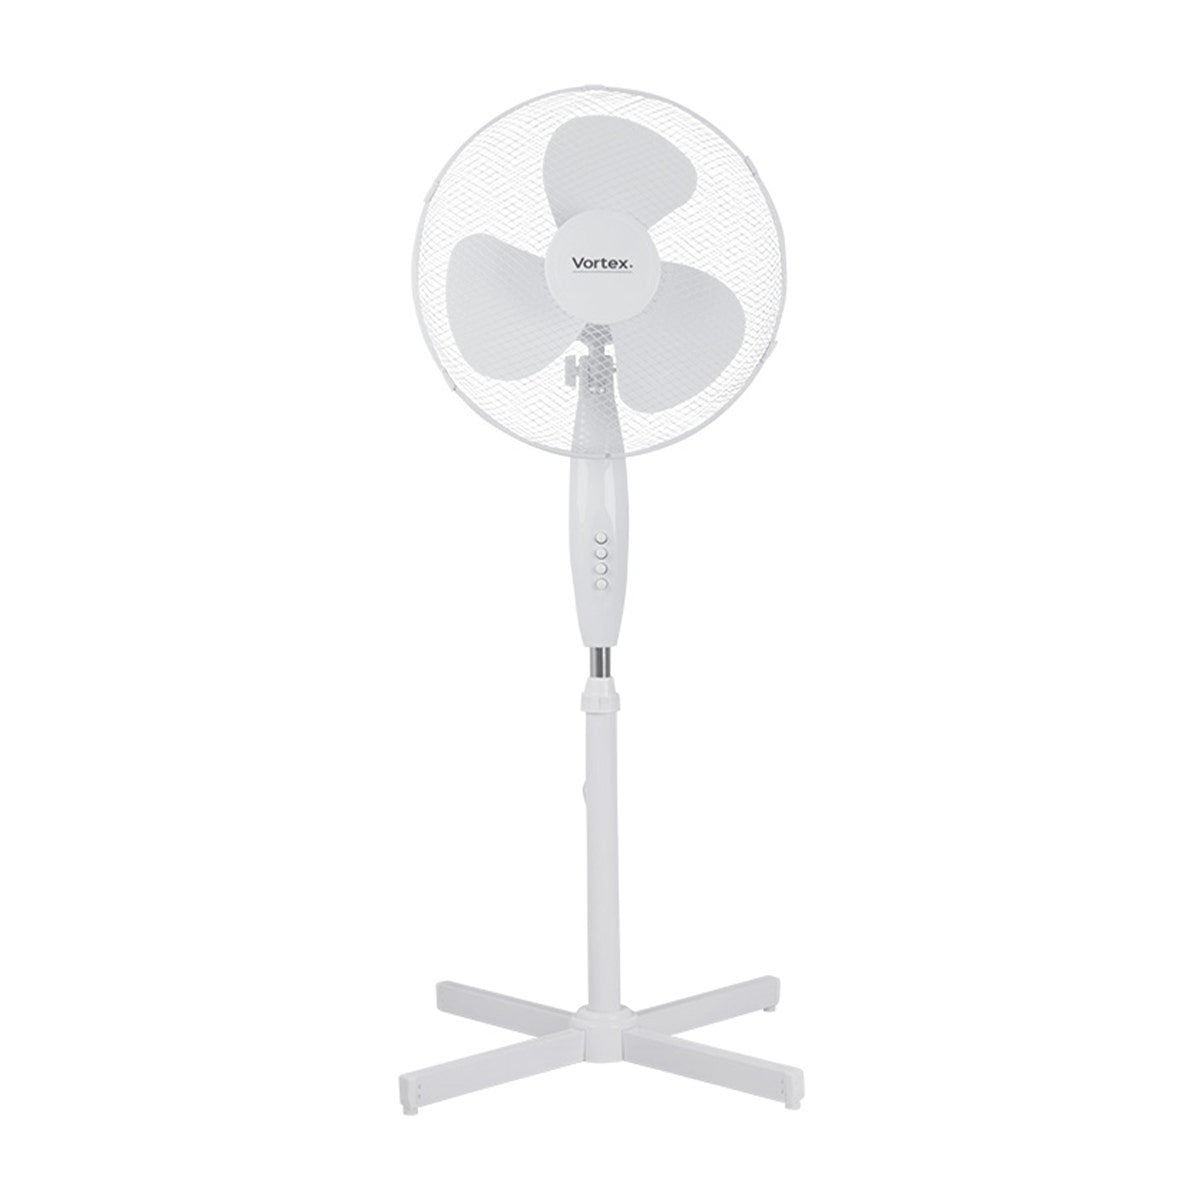 Vortex 16" Oscillating Pedestal Fan (3 Speed)